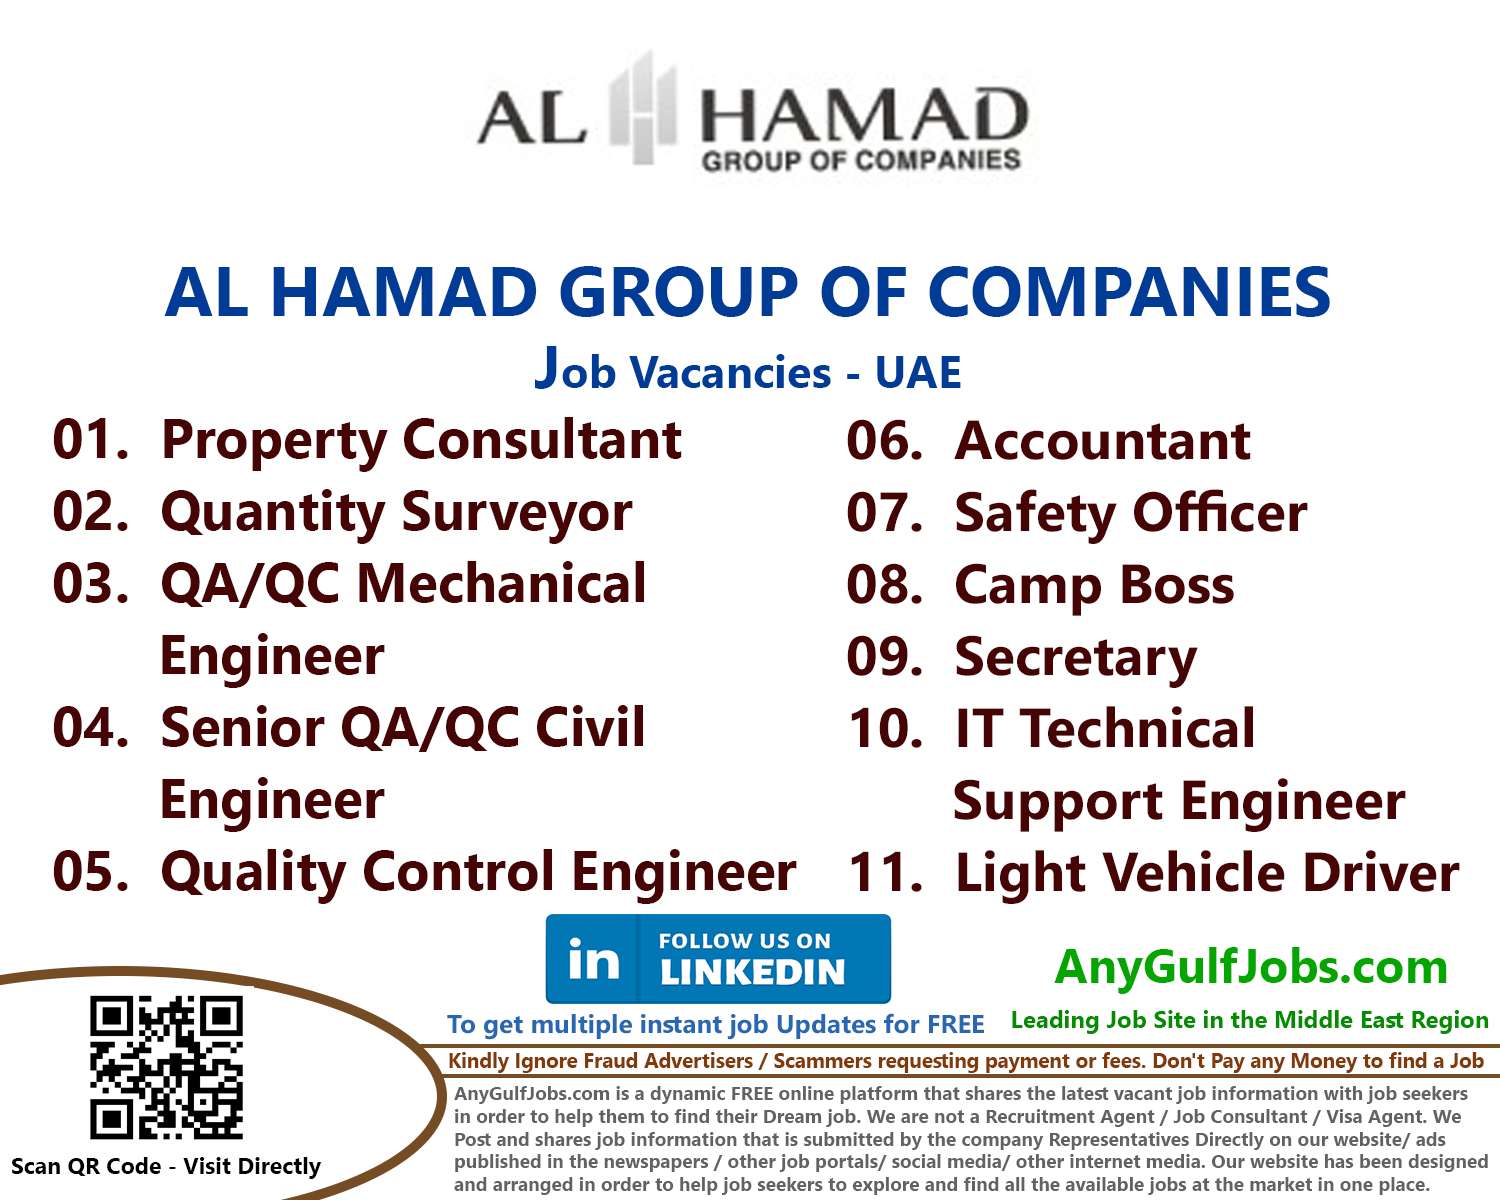 List of AL HAMAD GROUP OF COMPANIES Jobs - UAE